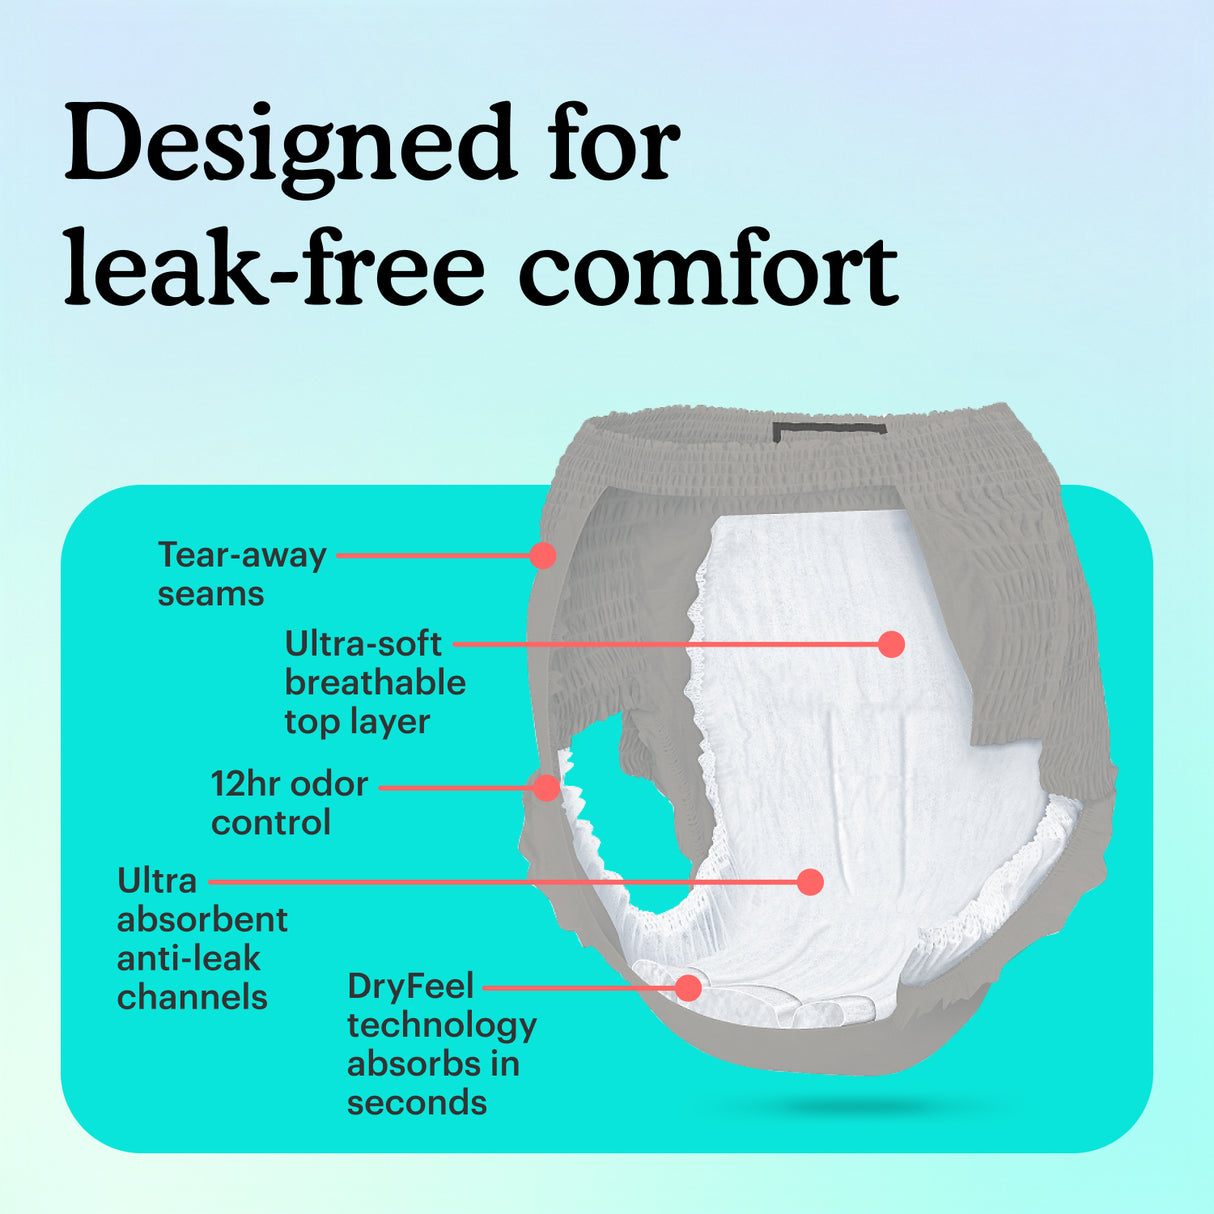 Leak-free comfort design